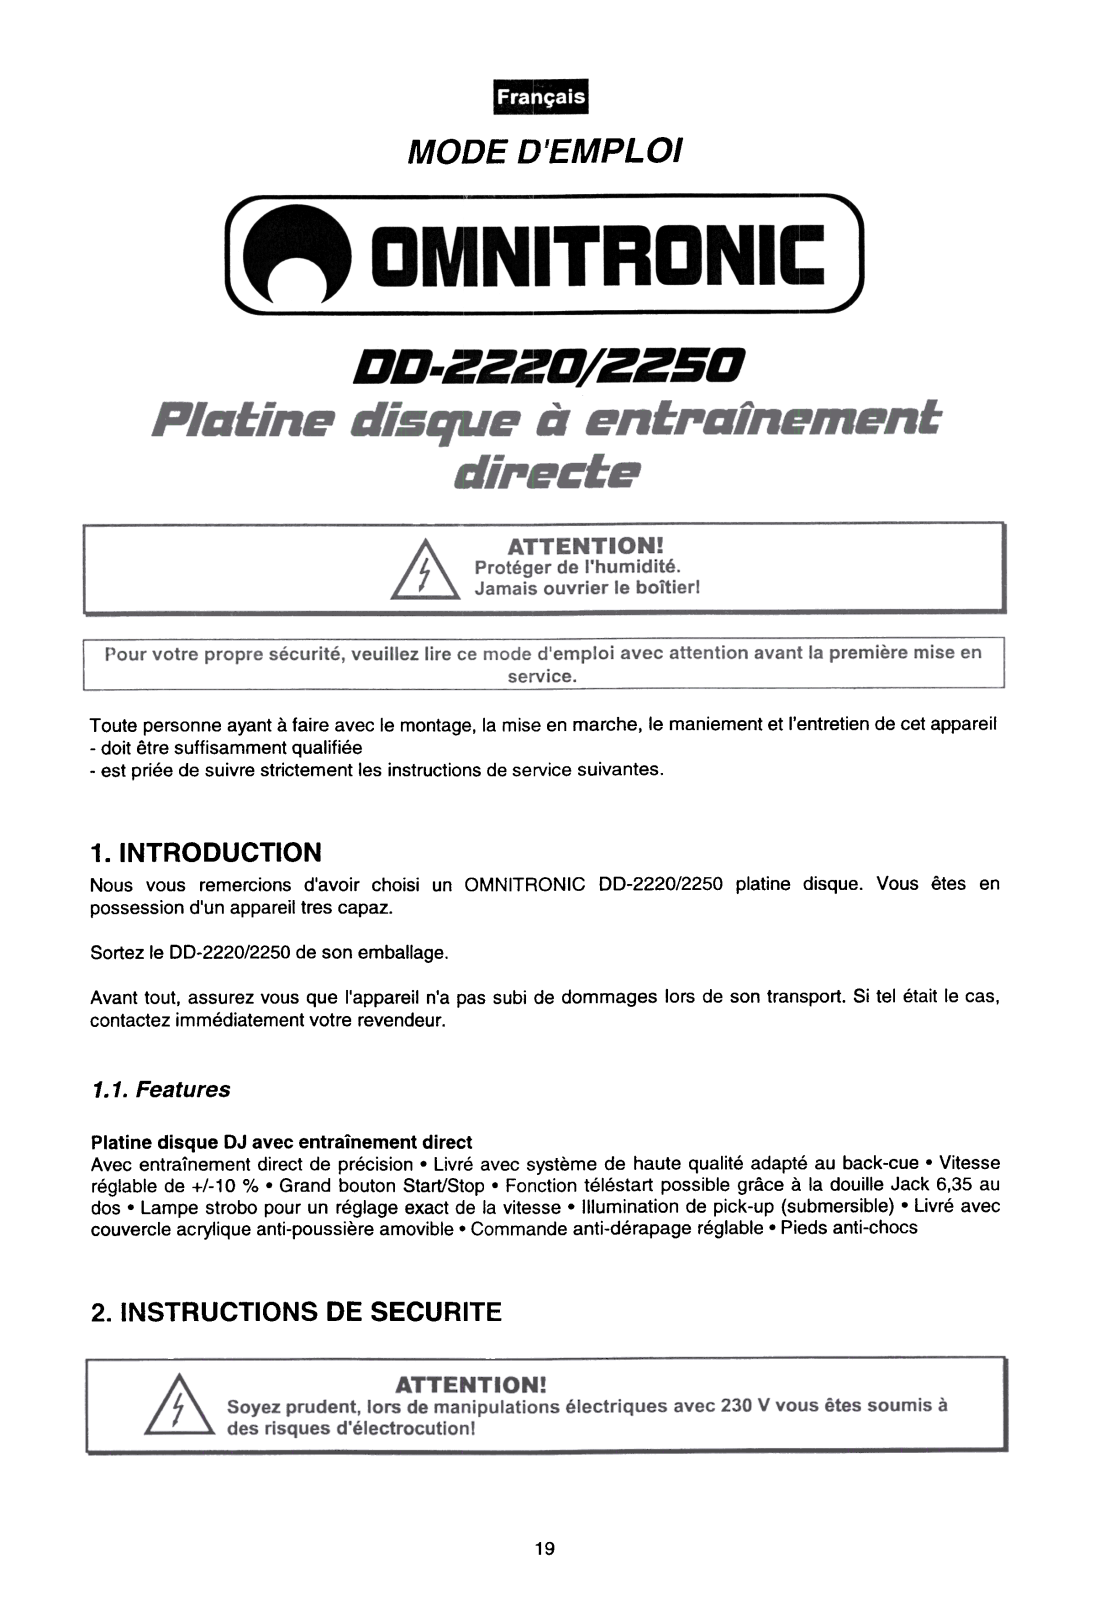 OMNITRONIC DD-2220, DD-2250 User Manual